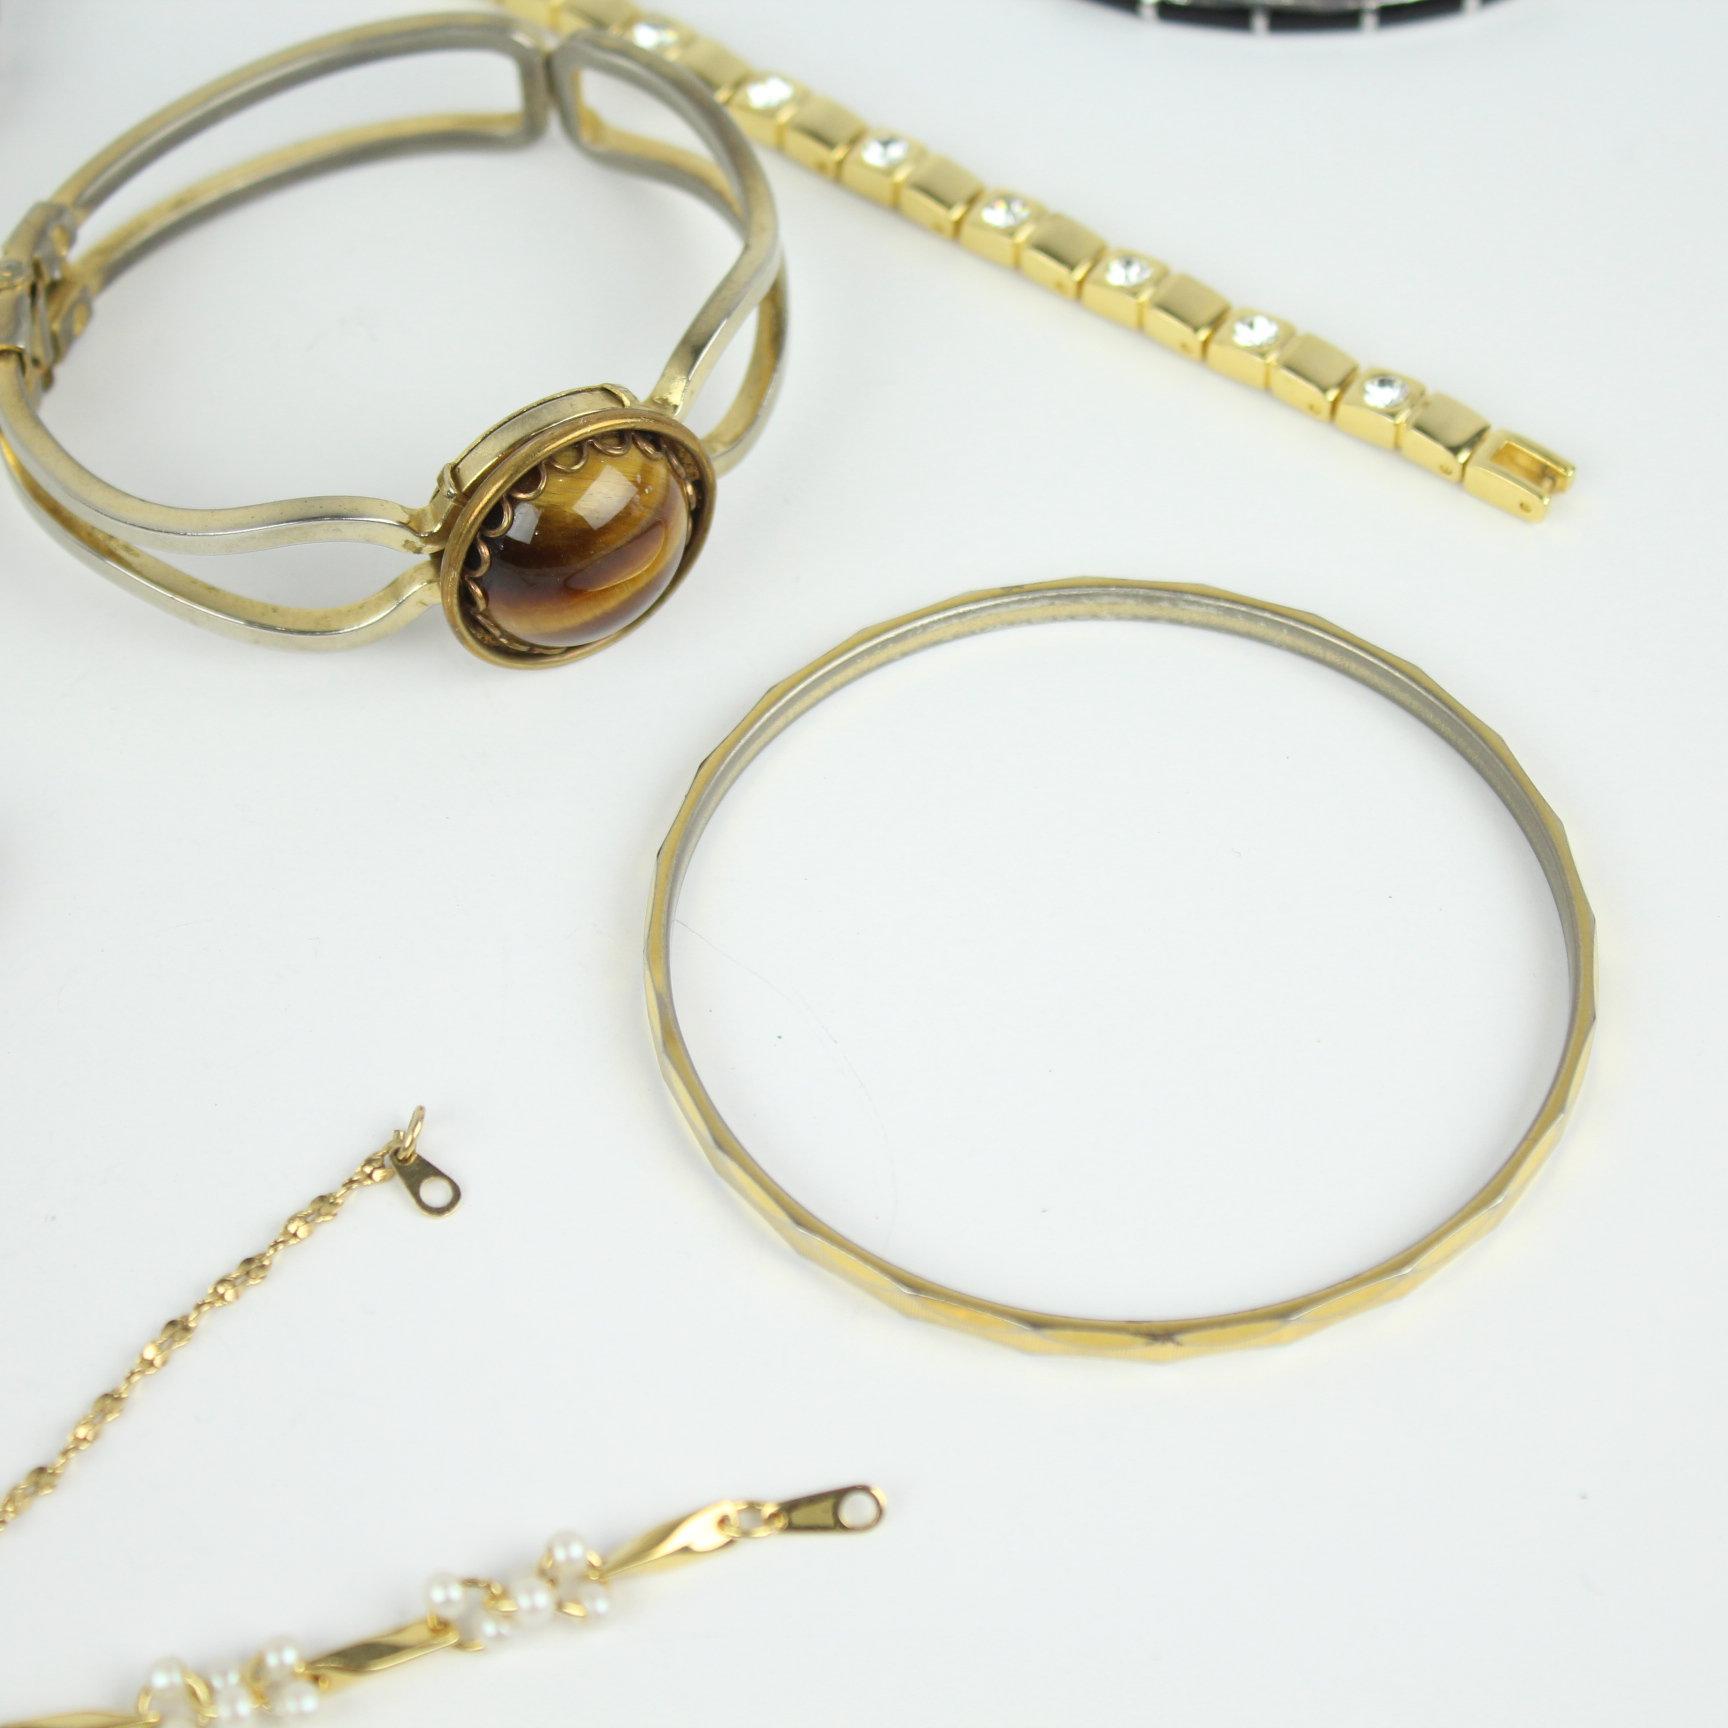 12 Ladies Costume Jewelry Bracelet Lot